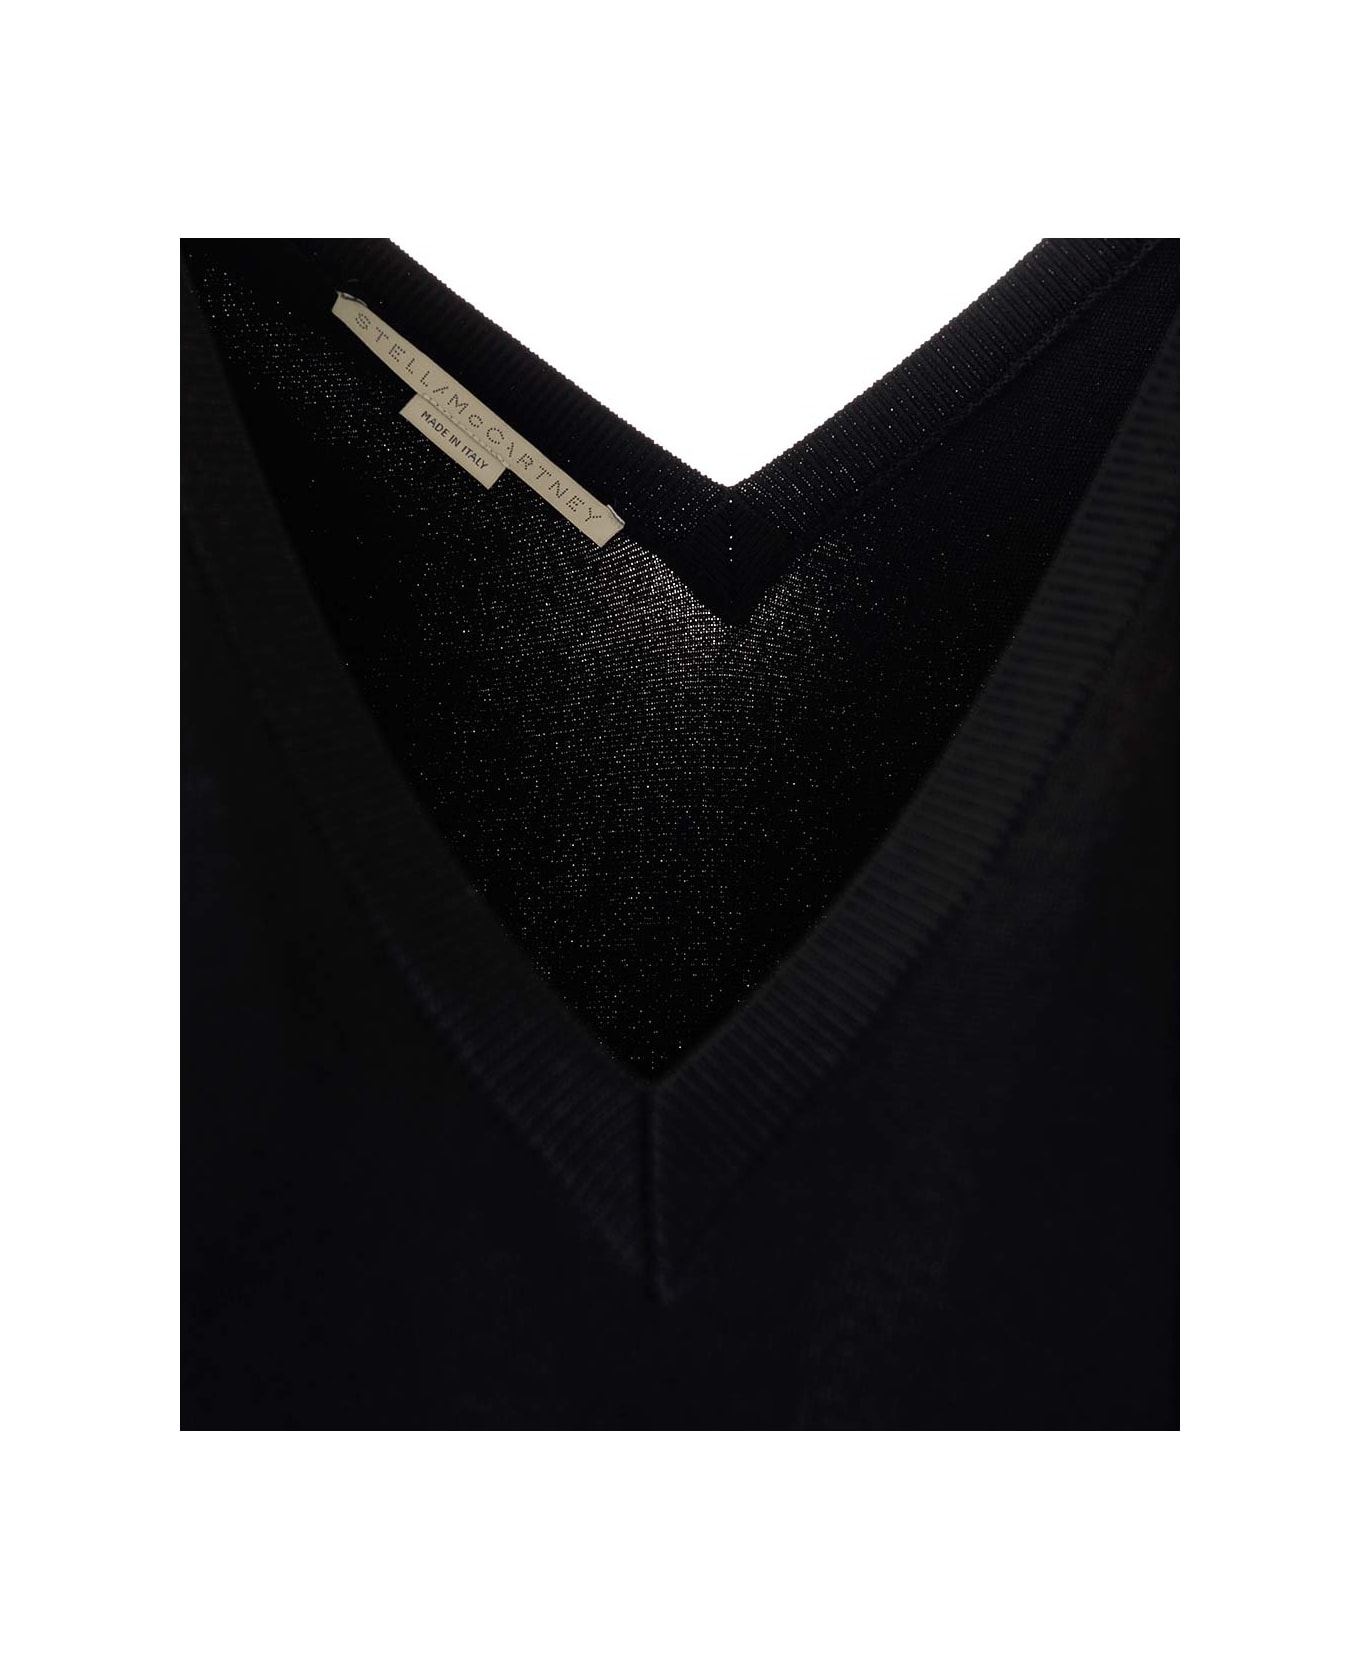 Stella McCartney Compact Knit Dress - Black